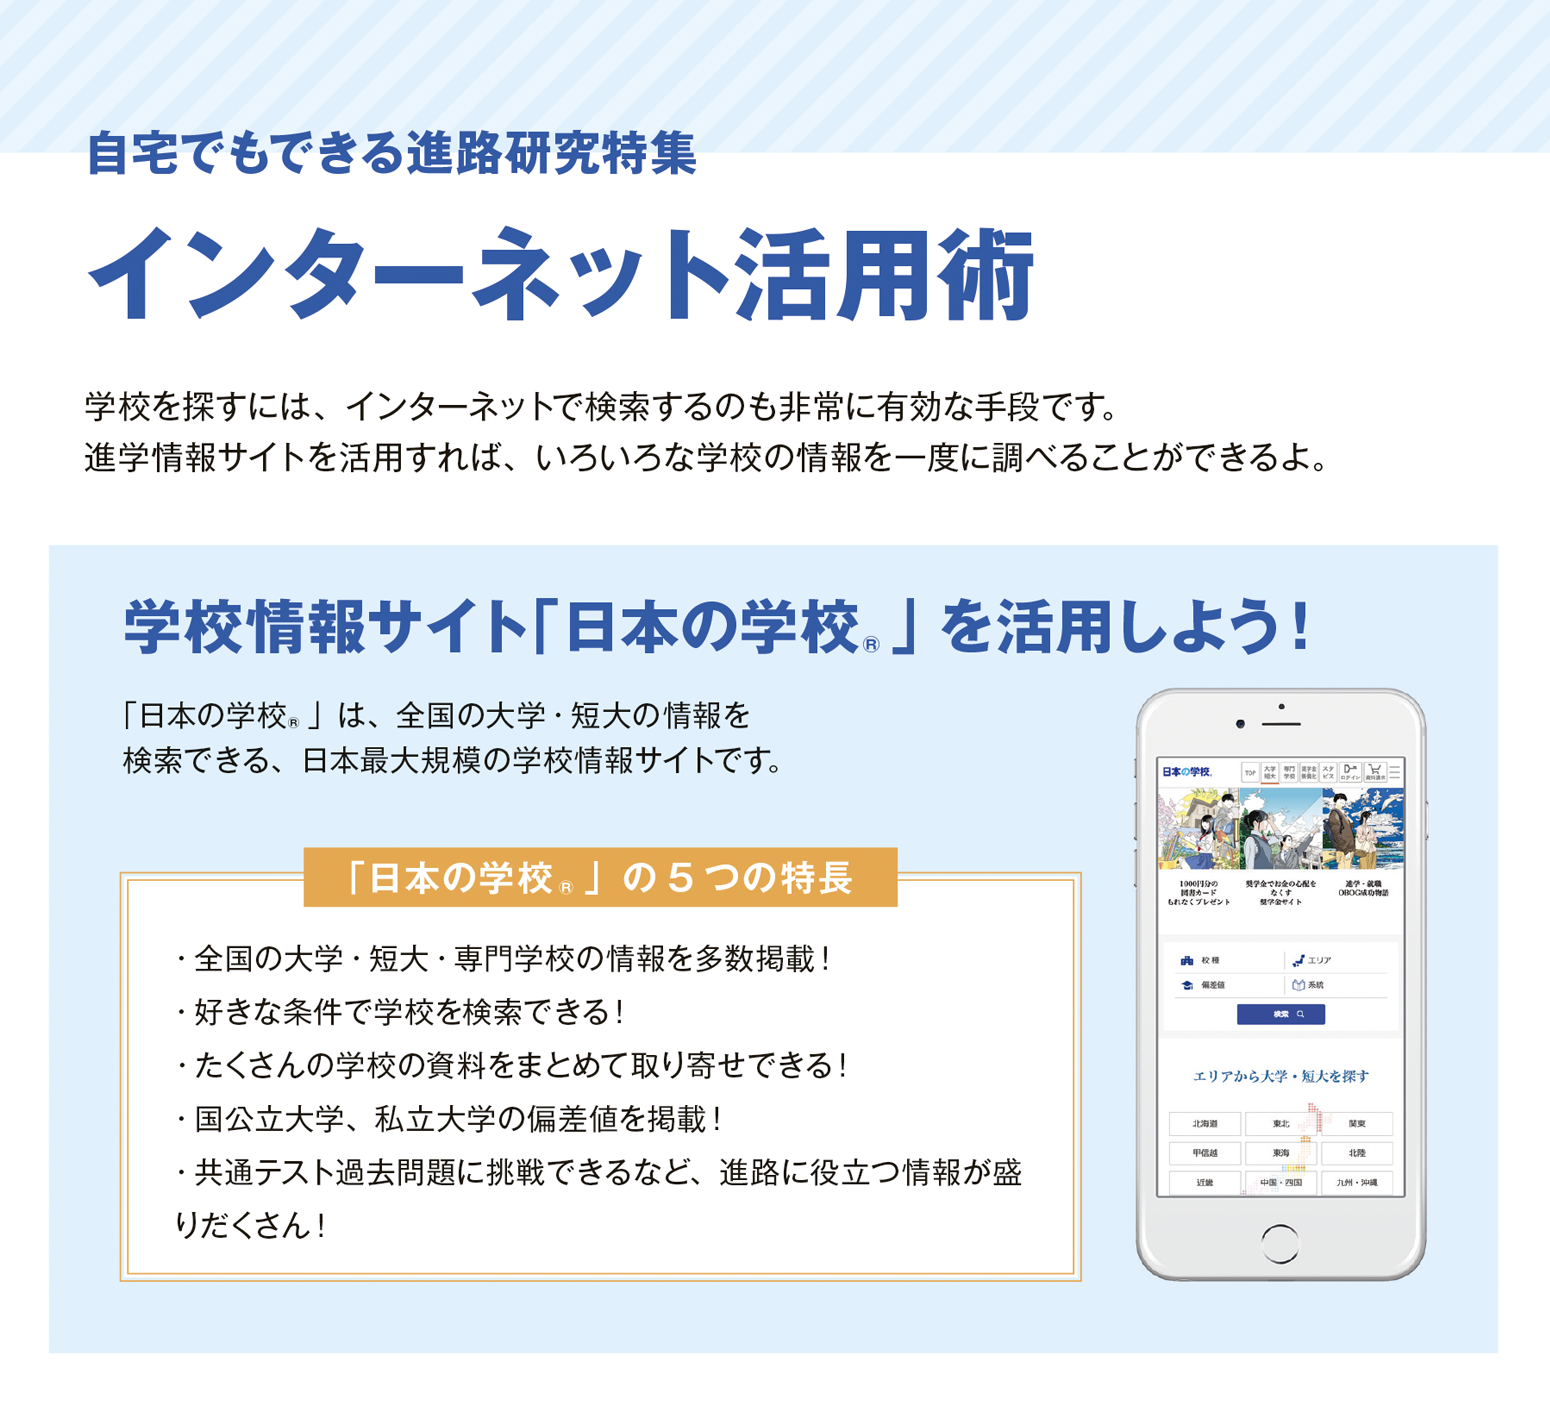 学校情報サイト「日本の学校」を活用しよう！